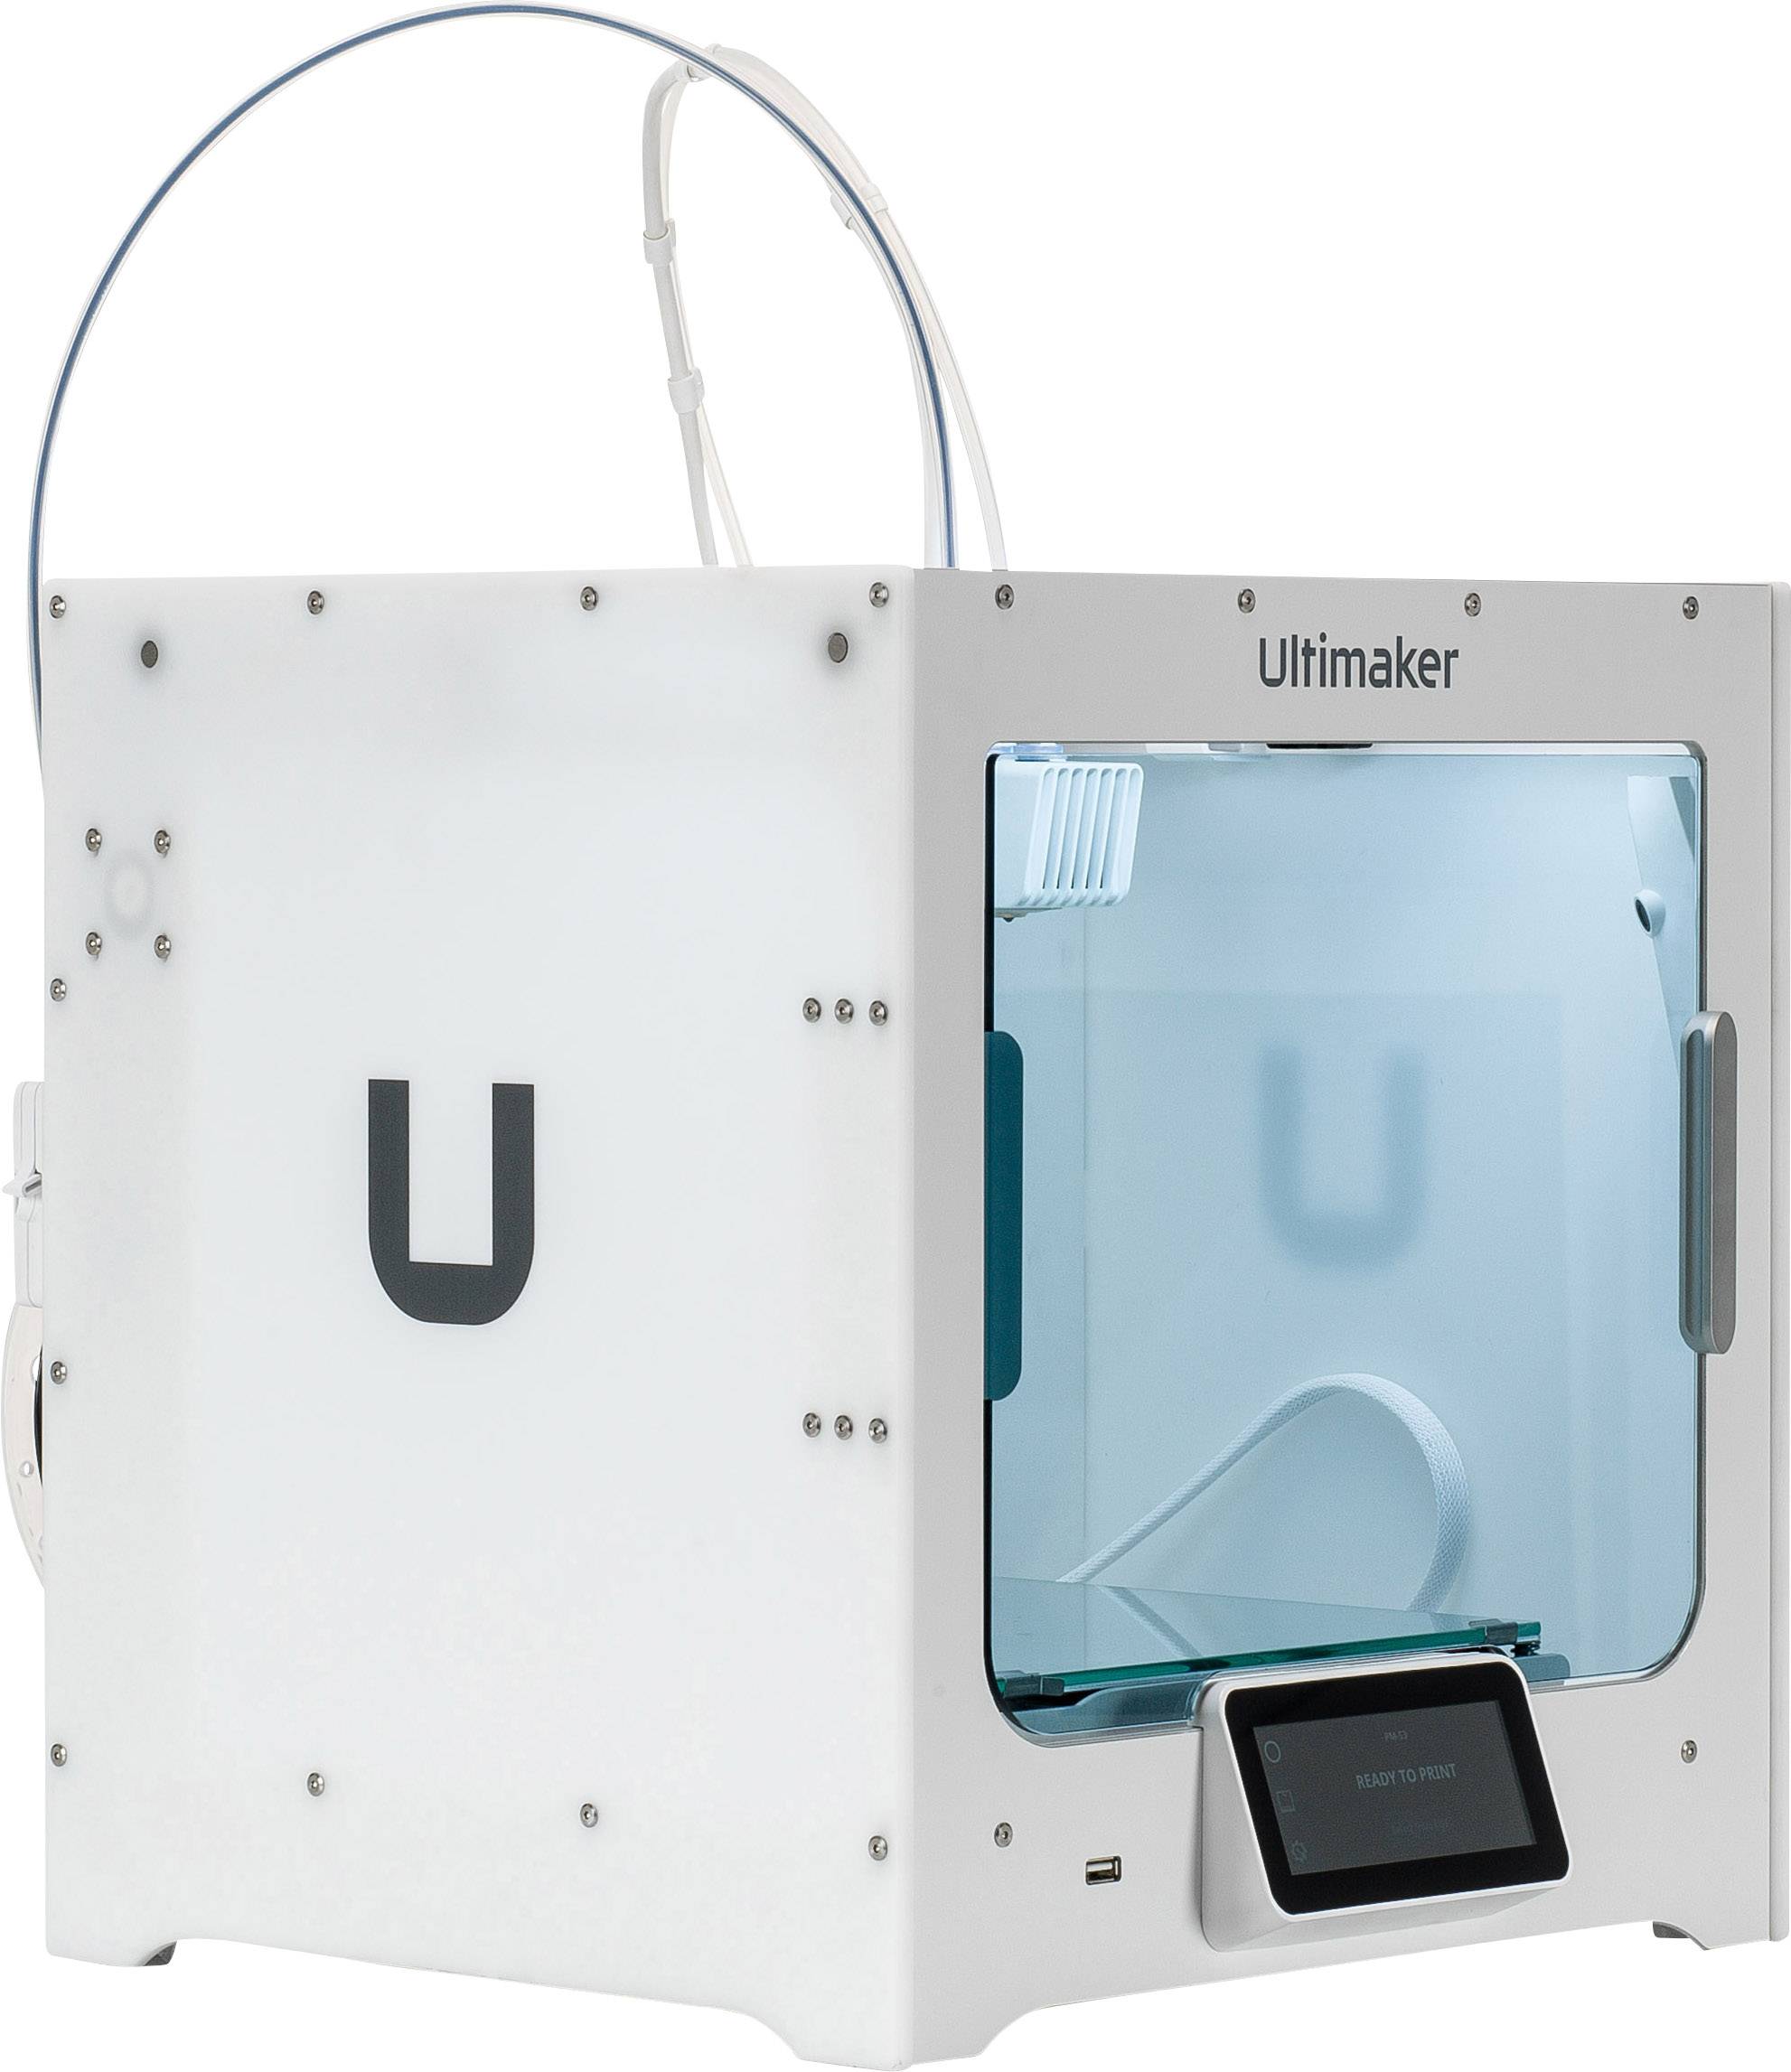 Hot sale 10PCS Spring For Ultimaker Makerbot 3D Printer Extruder Heated Bed HFUK 